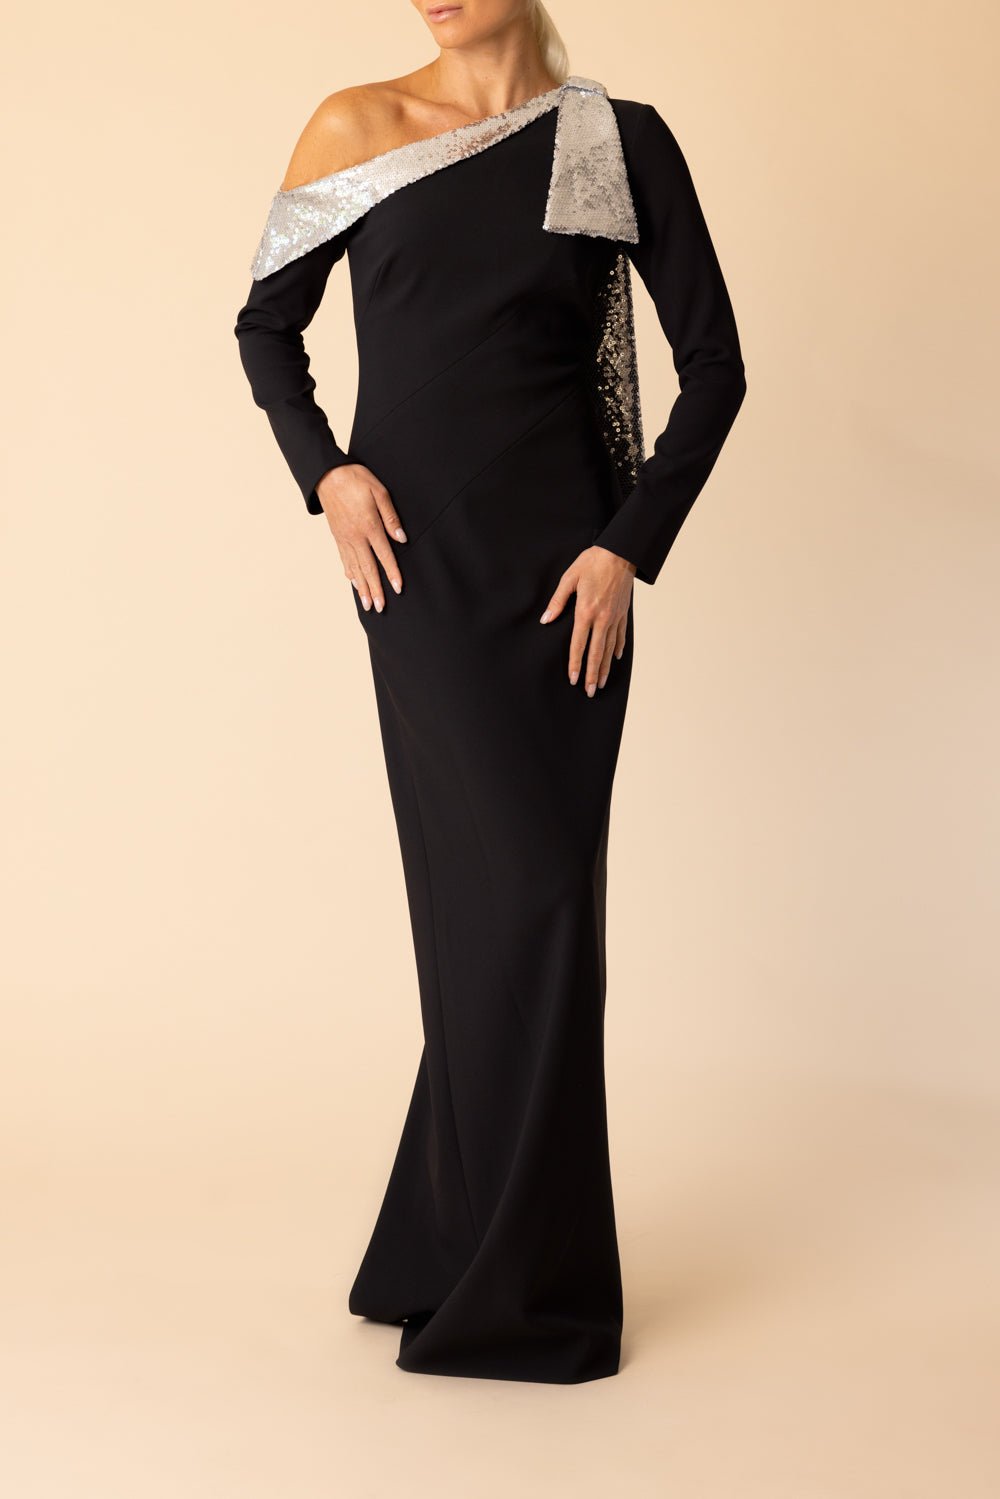 PAMELLA ROLAND-Contrast Neckline Gown-